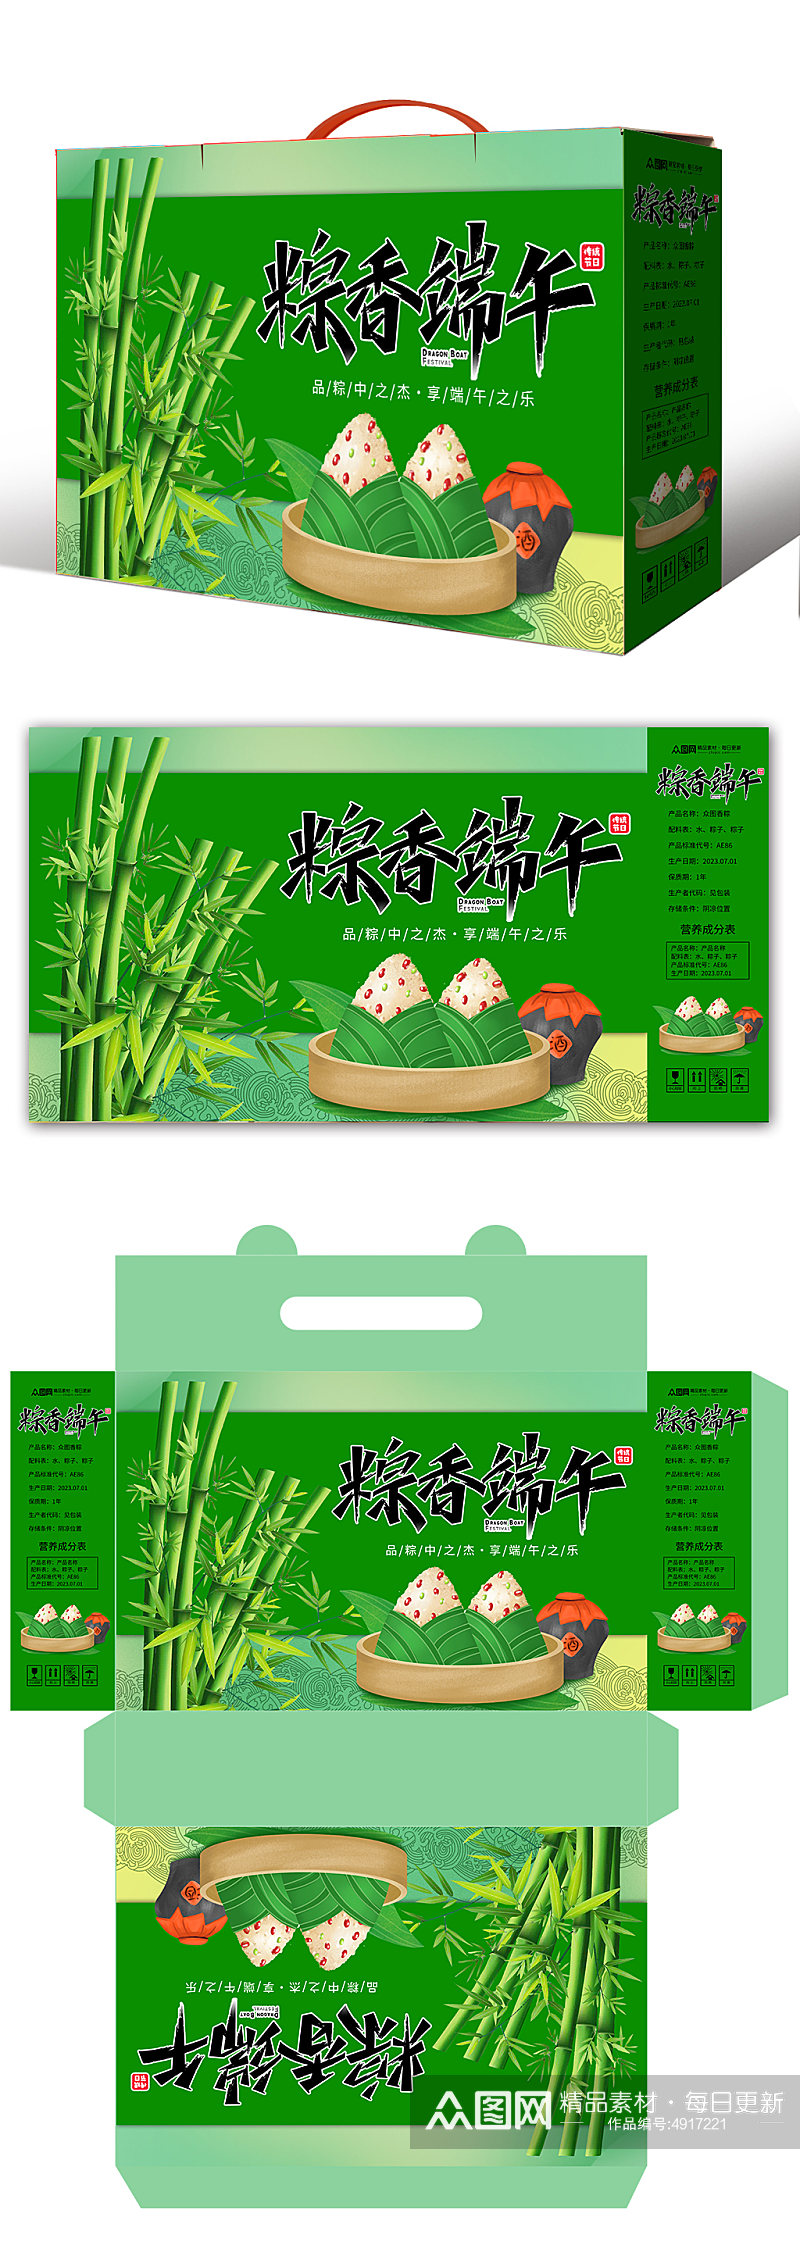 粽香端午节美食粽子包装礼盒设计素材